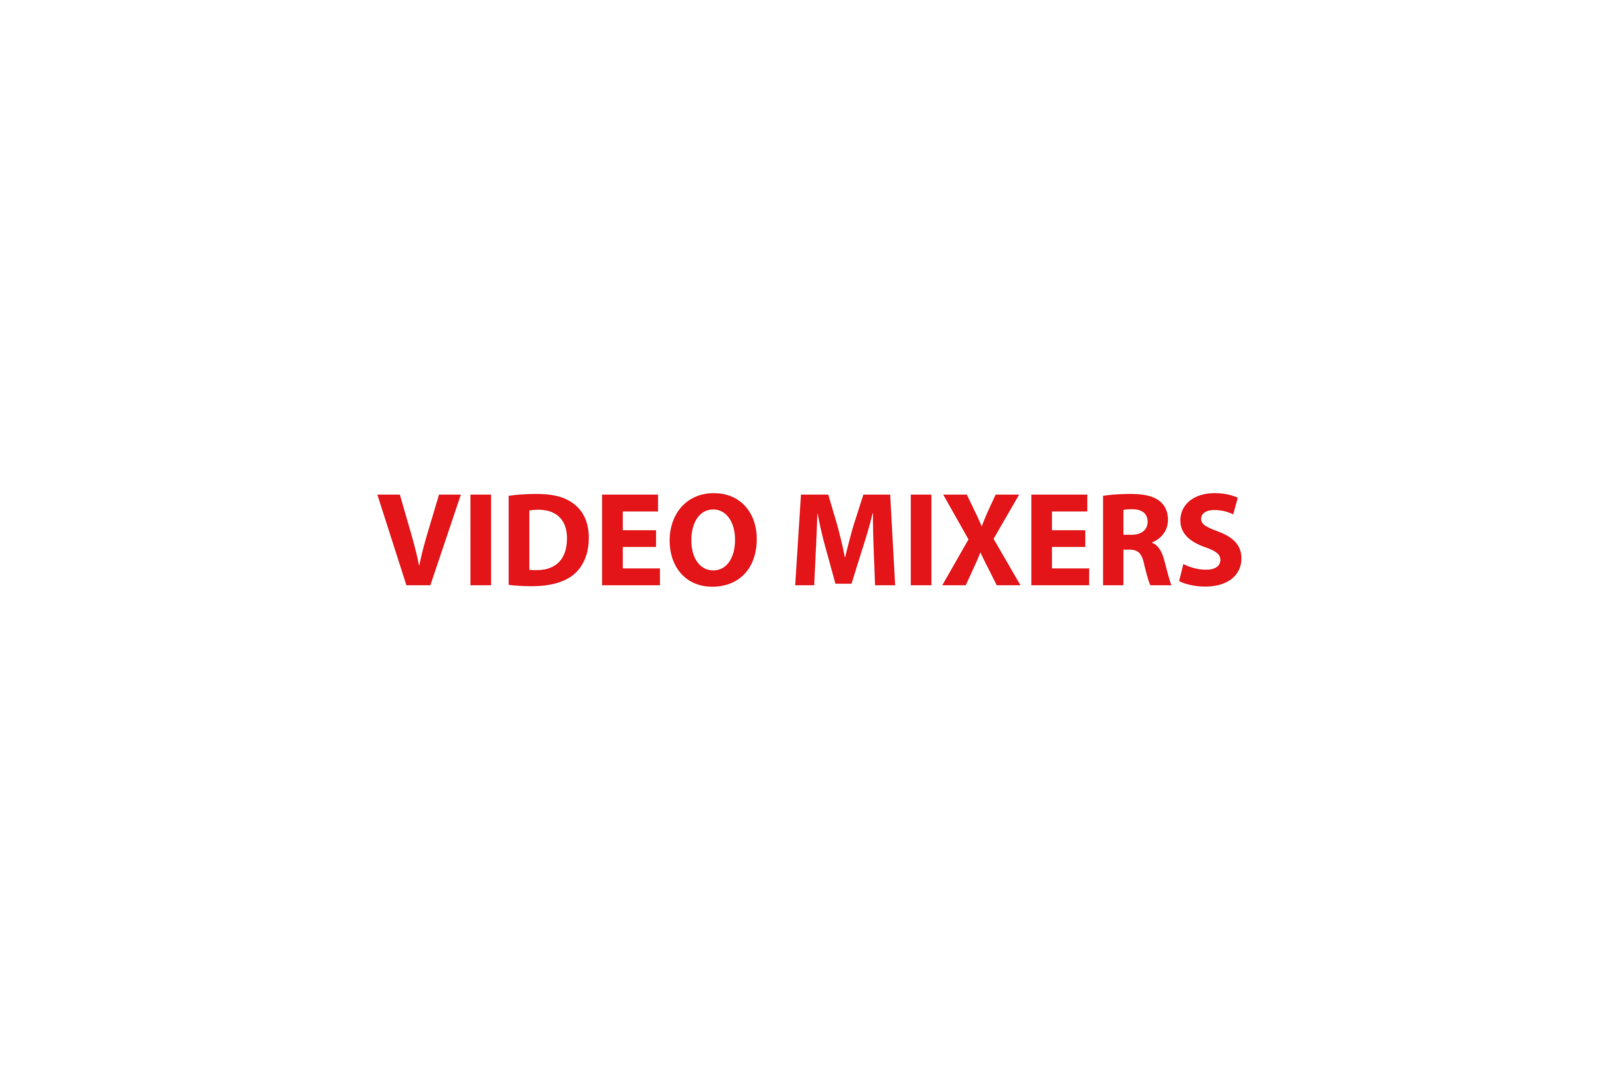 Video mixers